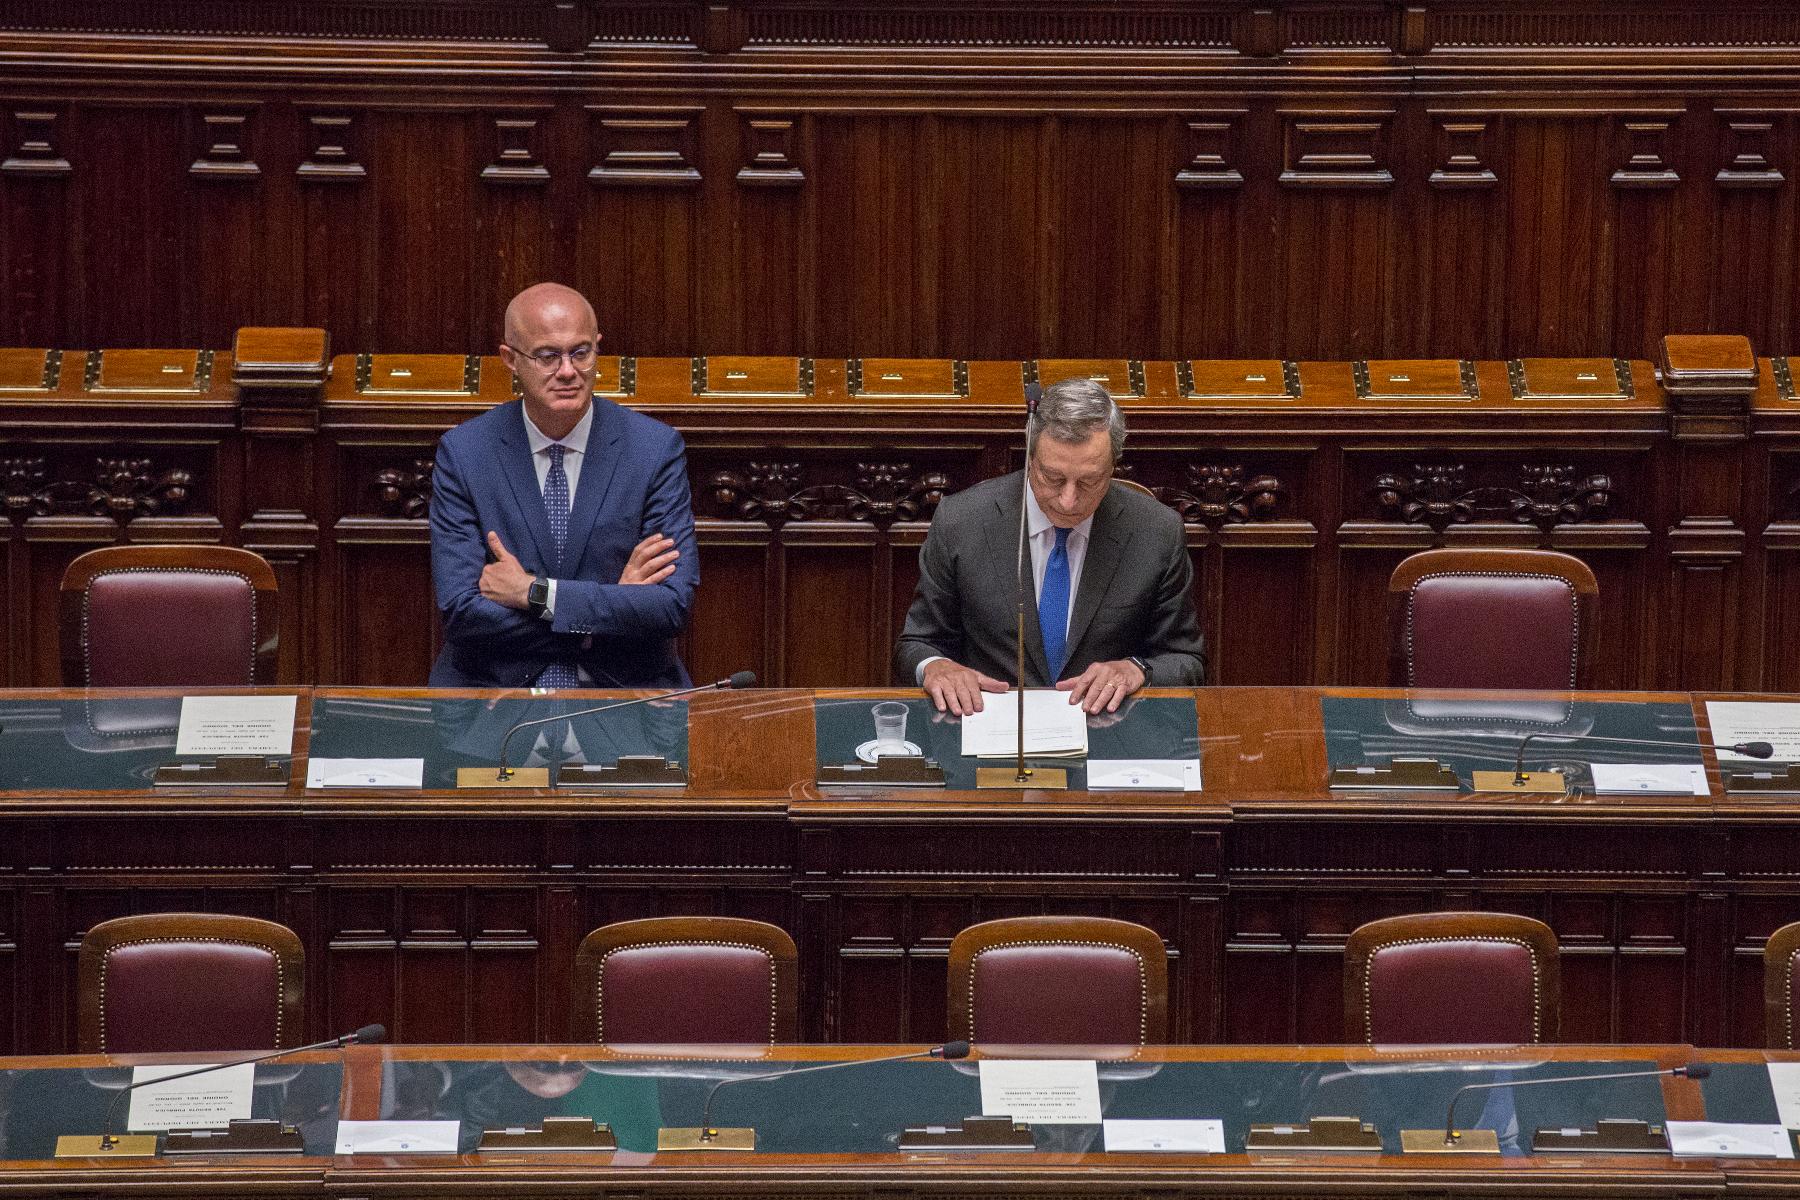 Consegna del discorso del Presidente del Consiglio dei ministri, Mario Draghi